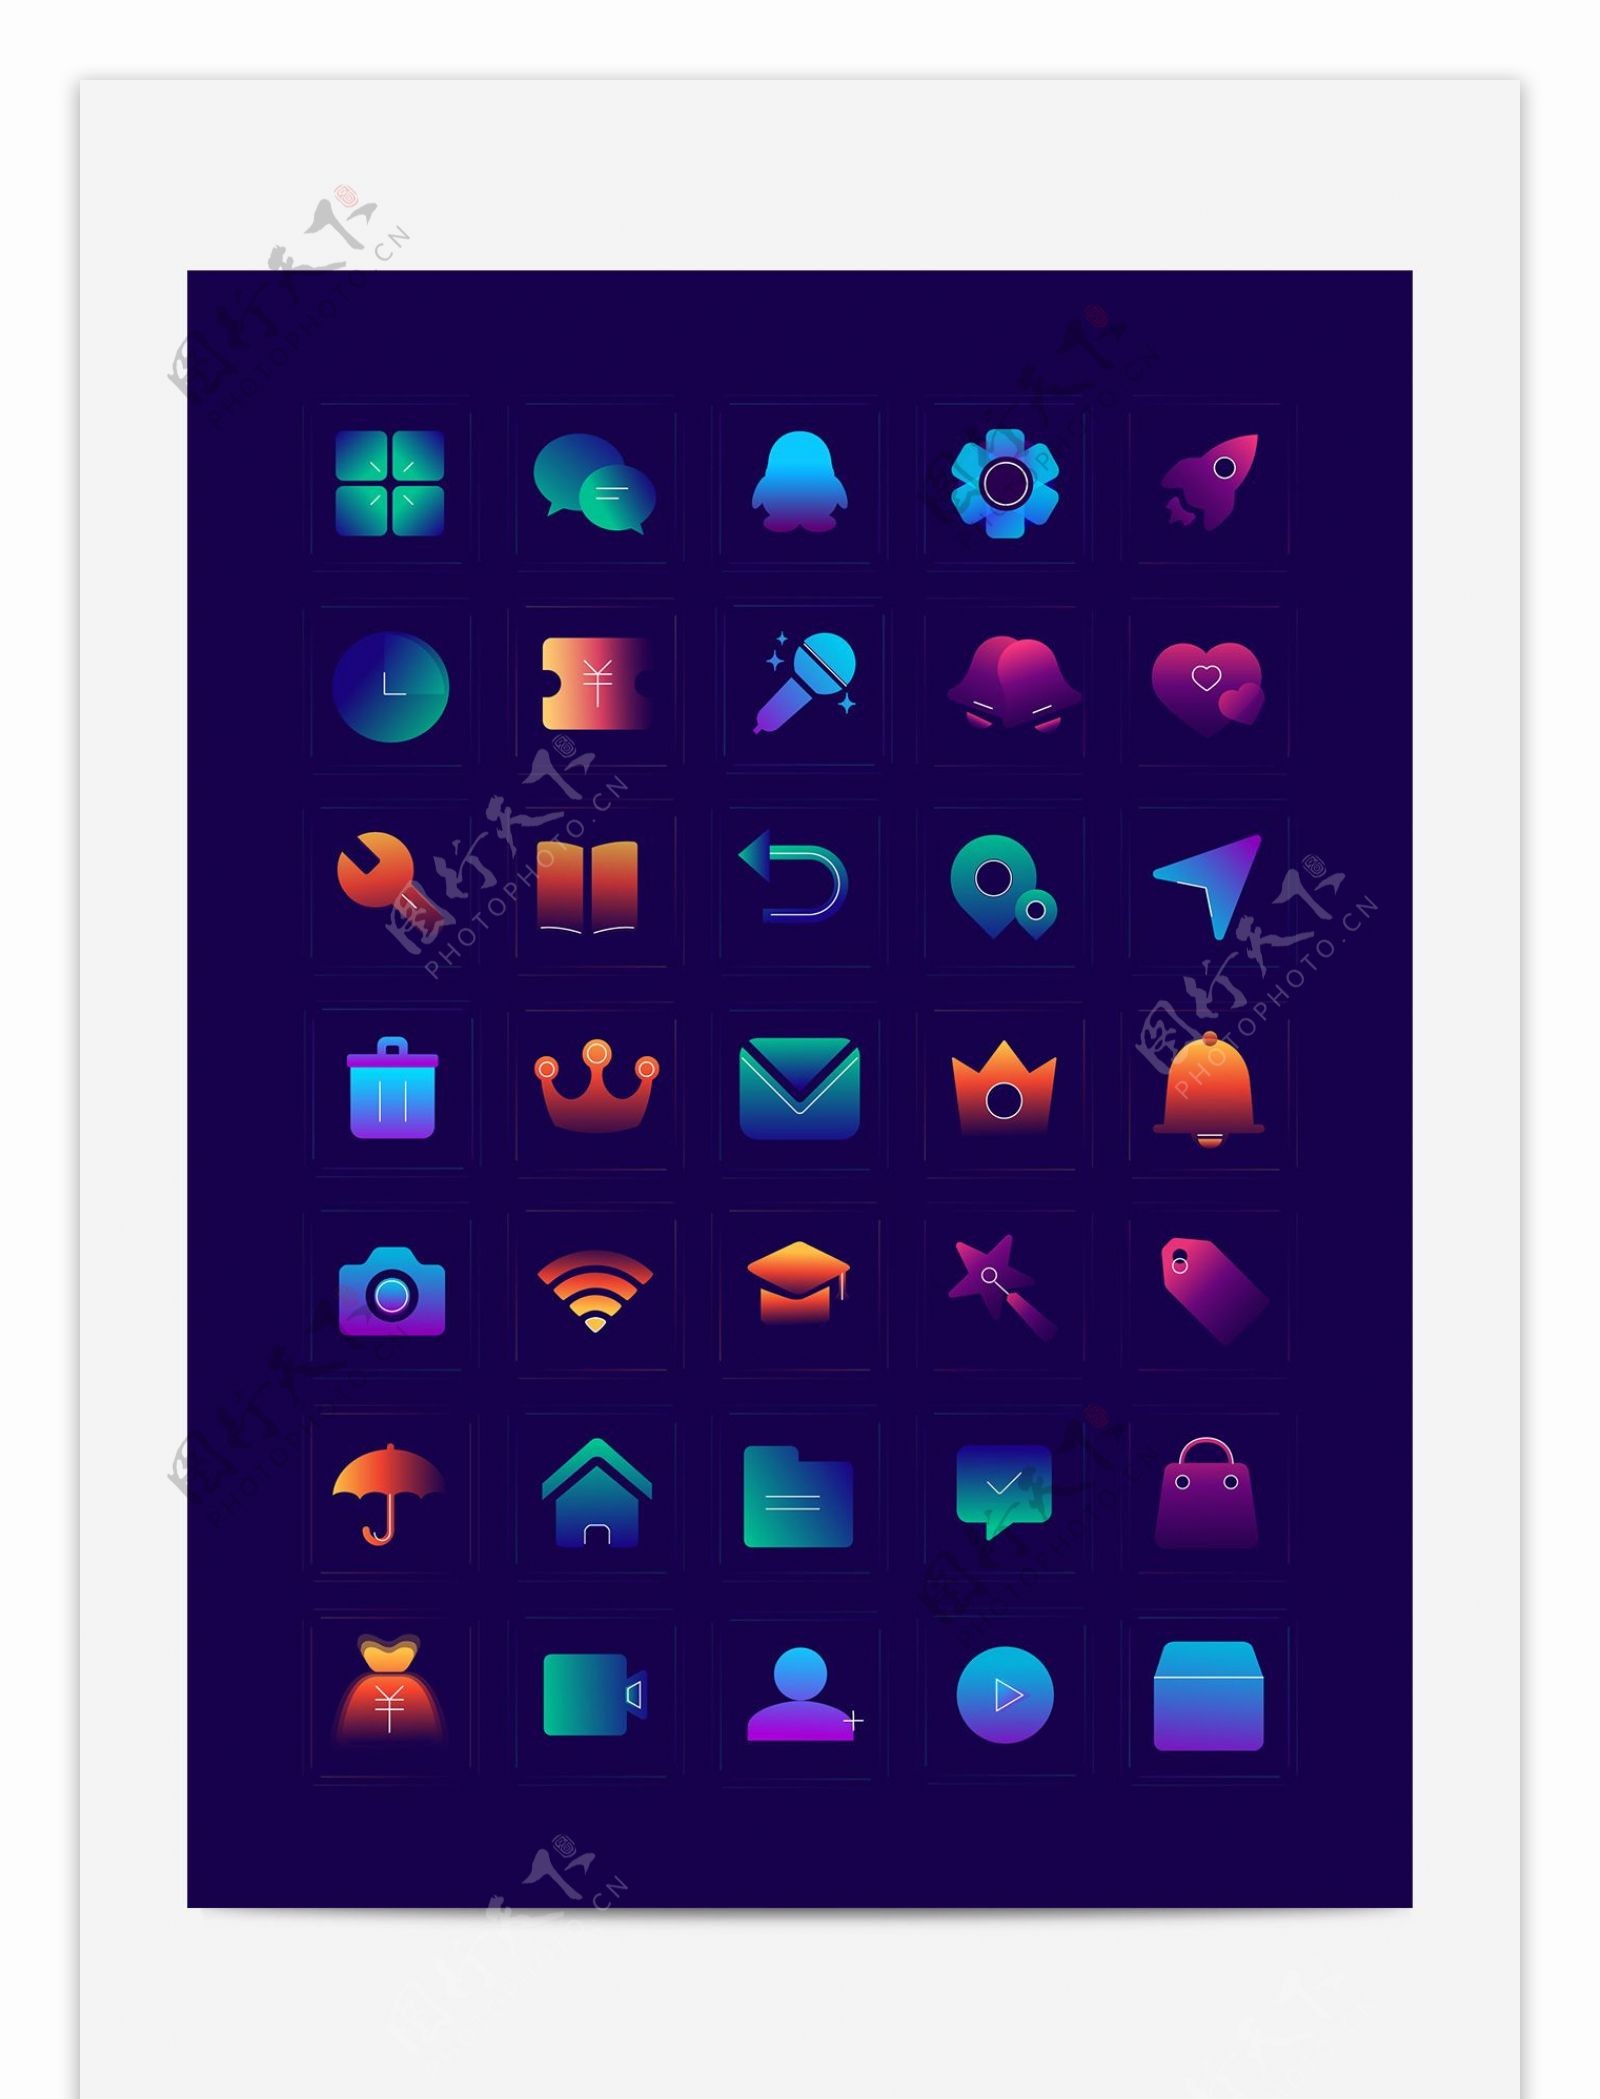 彩色渐变手机主题矢量图标icon